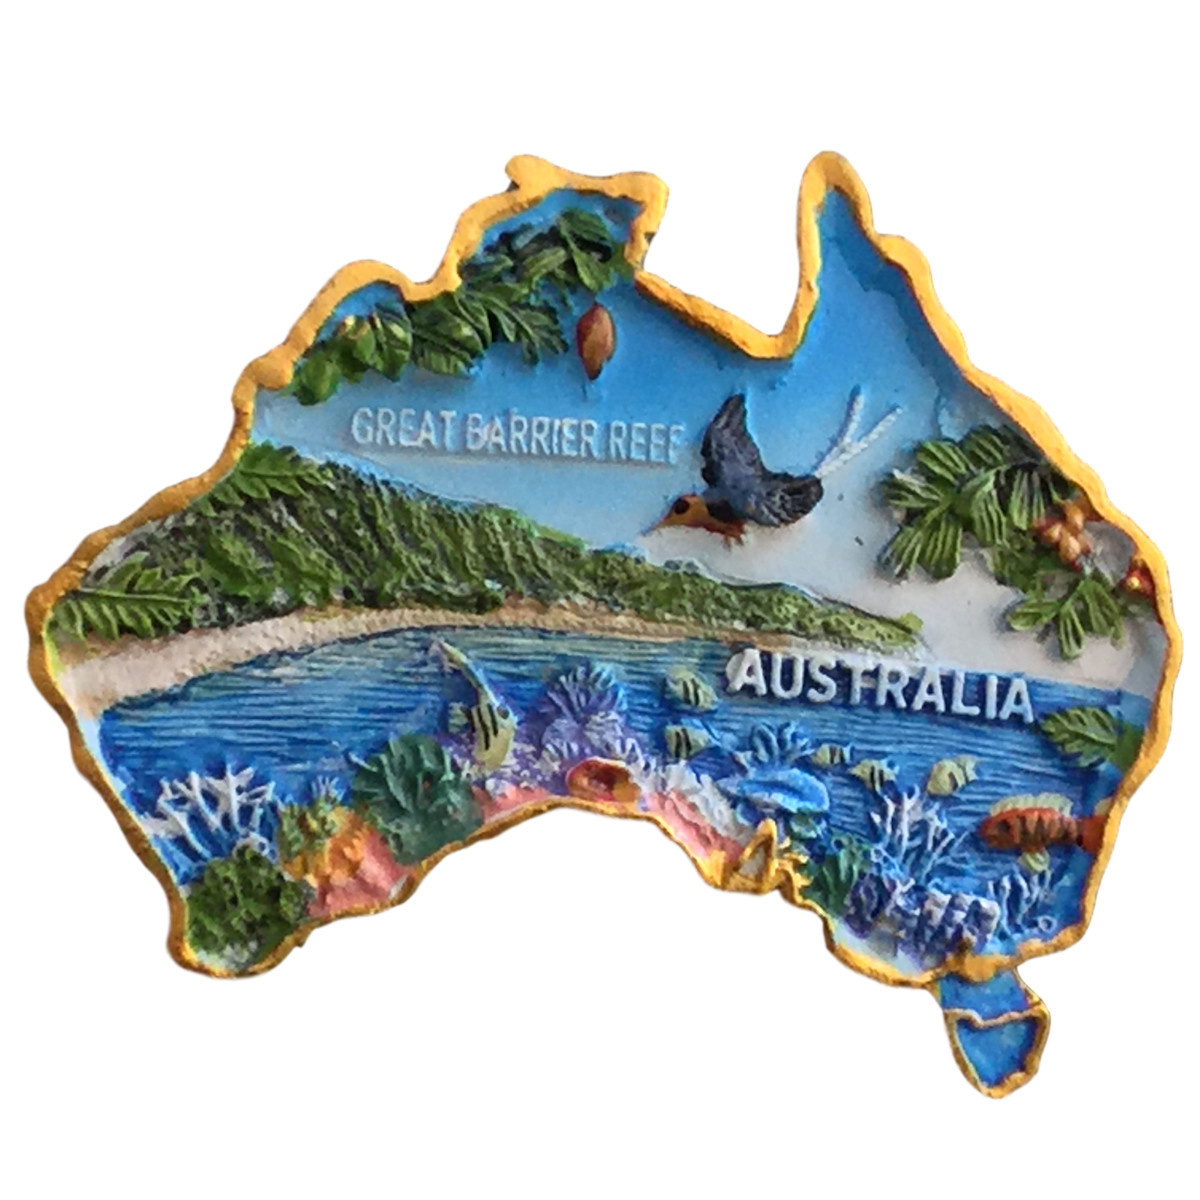 The Great Barrier Reef Australien Fridge Magnet Souvenir Neu 